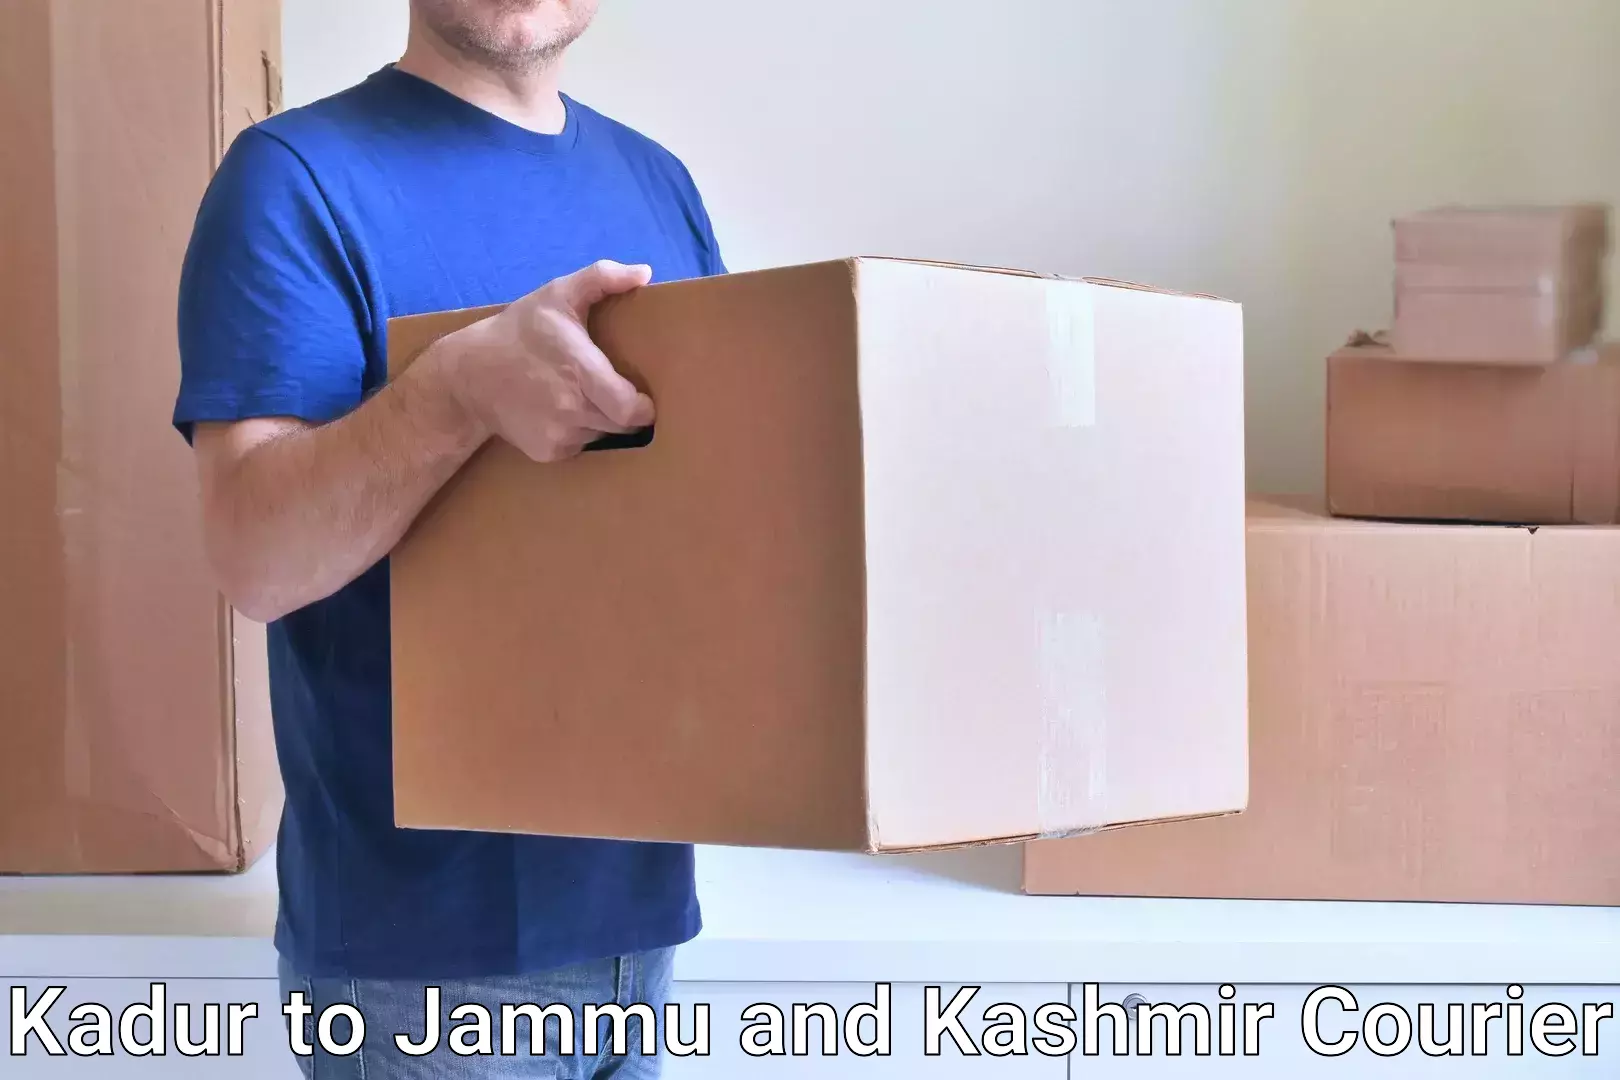 State-of-the-art courier technology Kadur to University of Kashmir Srinagar